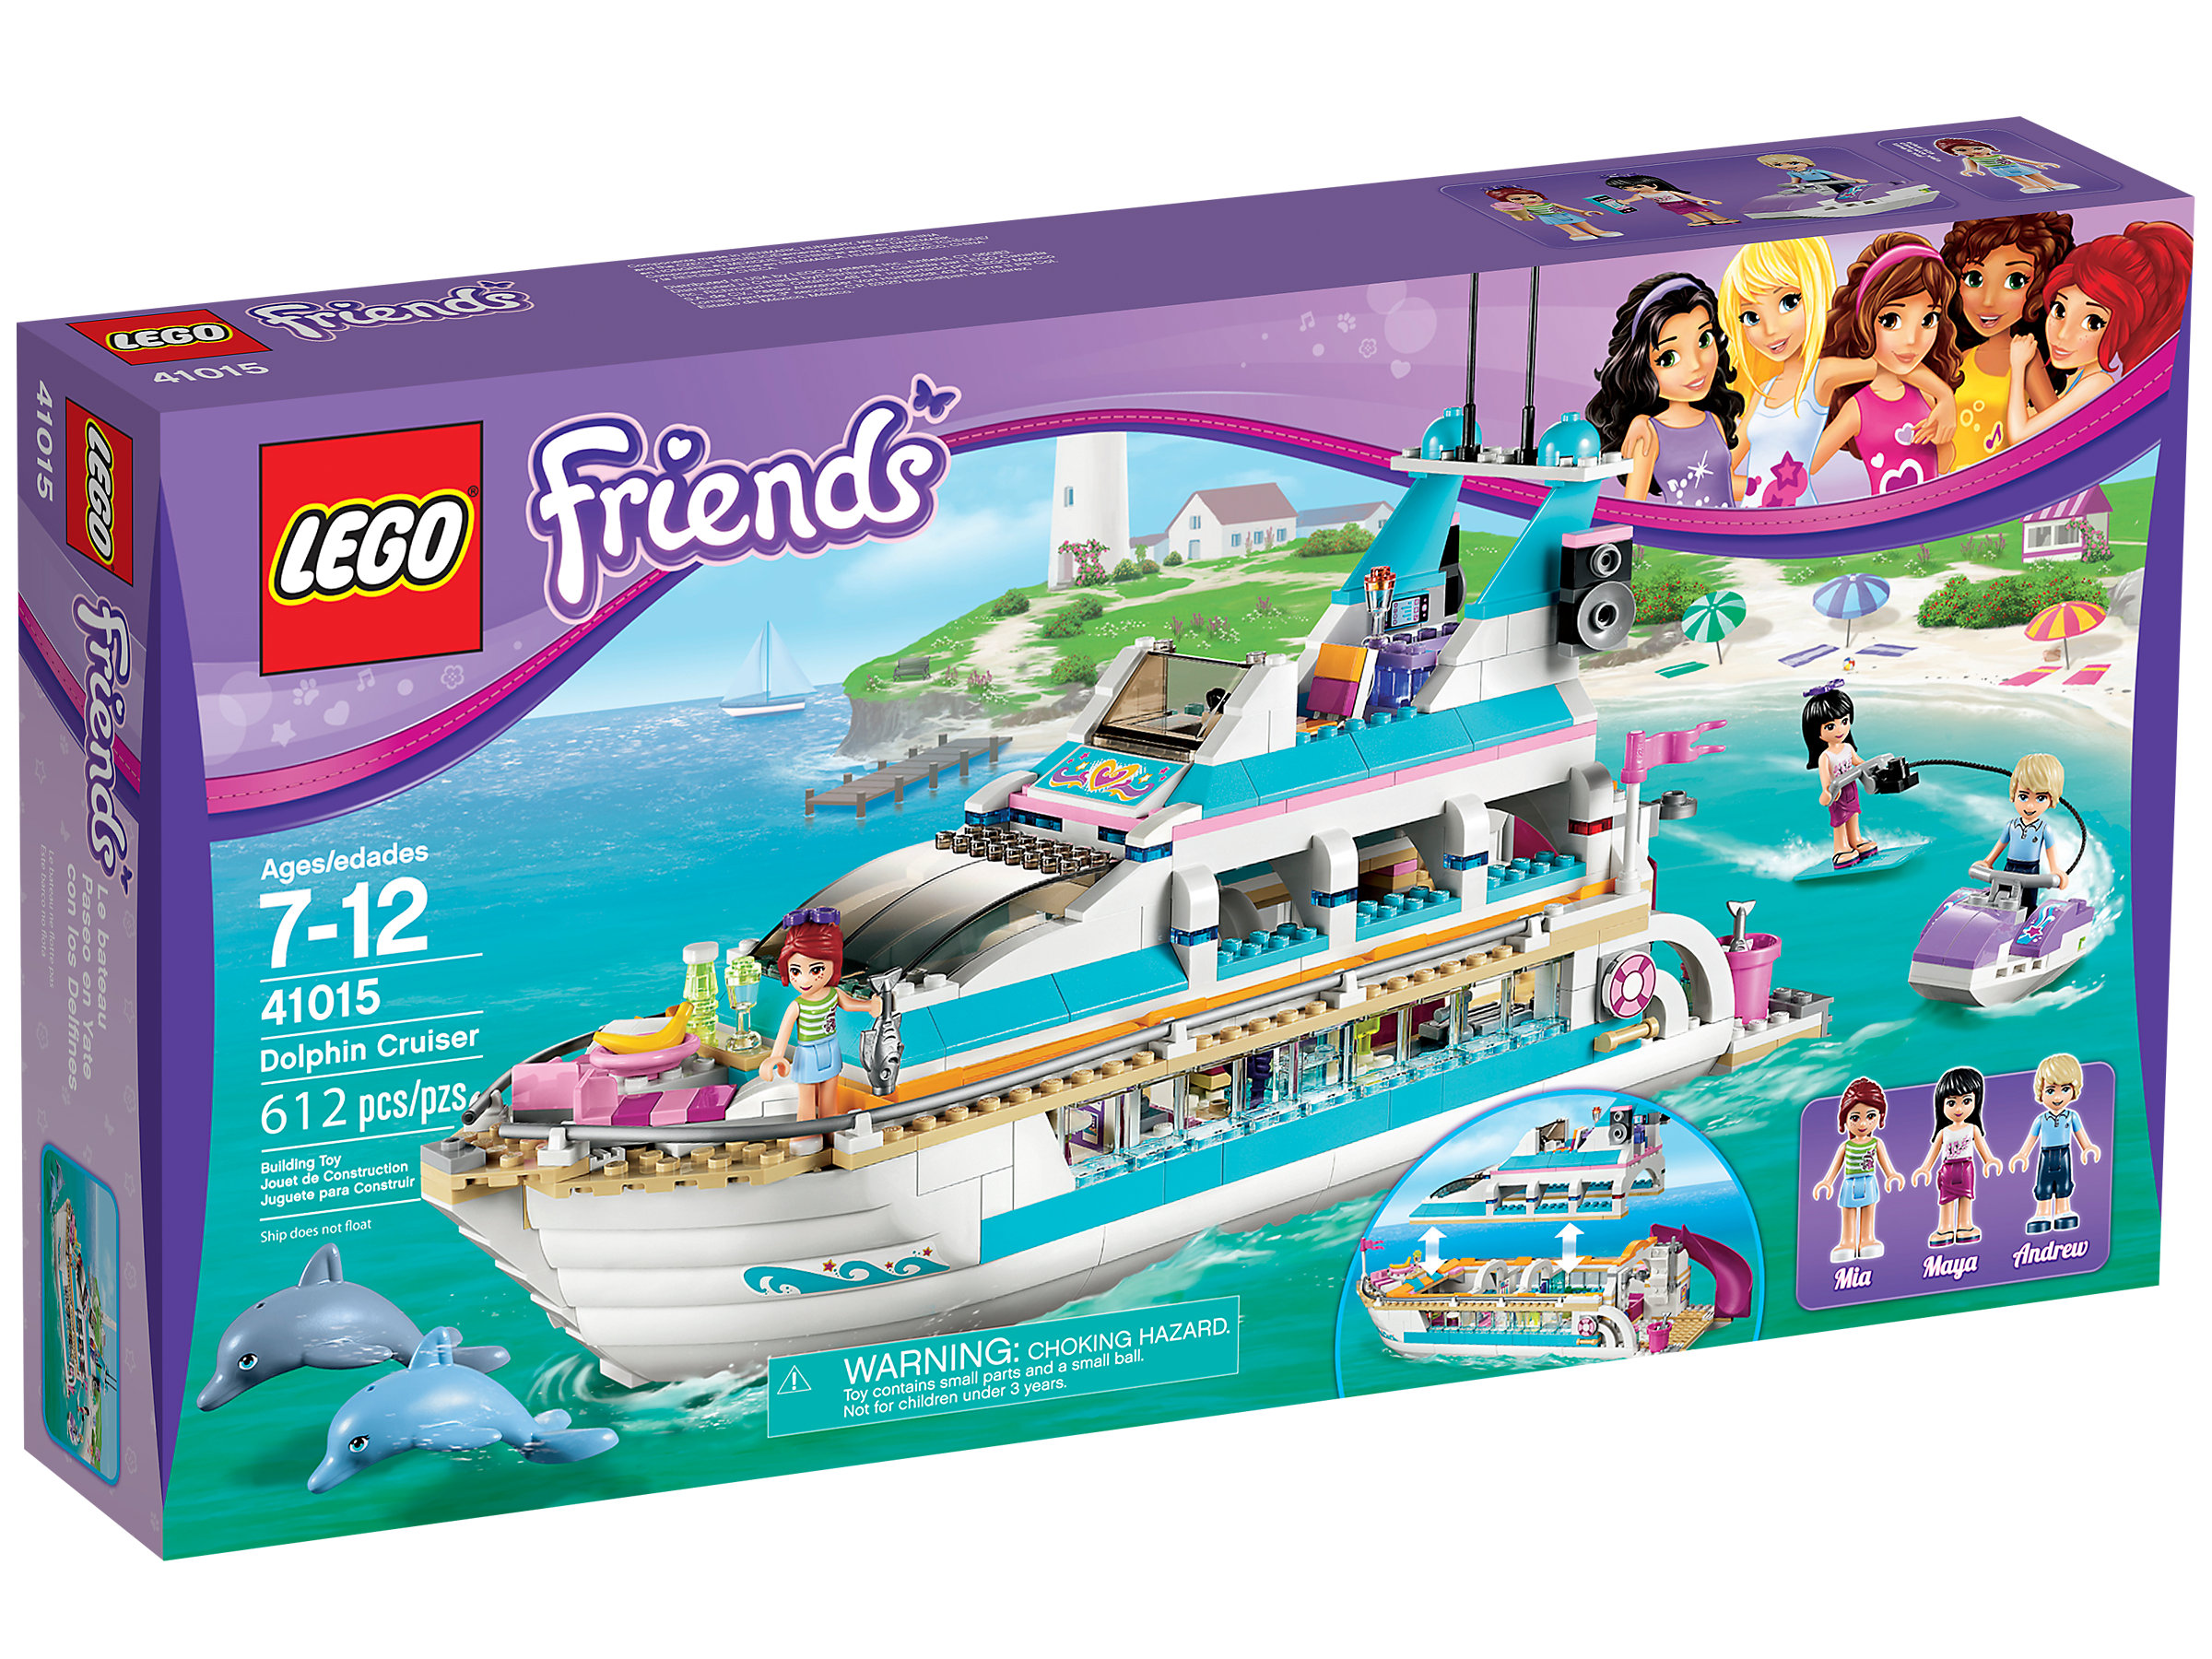 prezzo del lego friends yacht